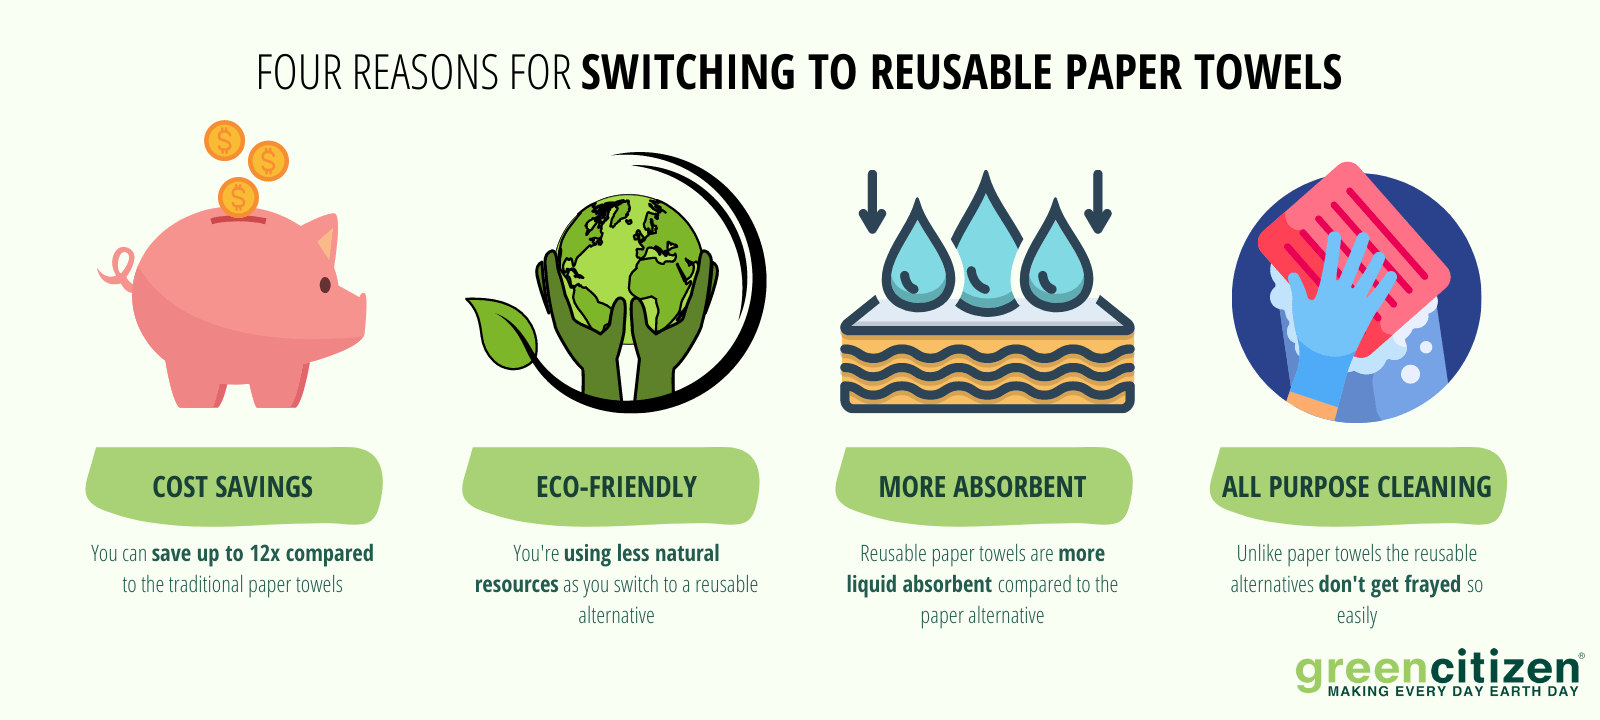 reusable paper towels benefits